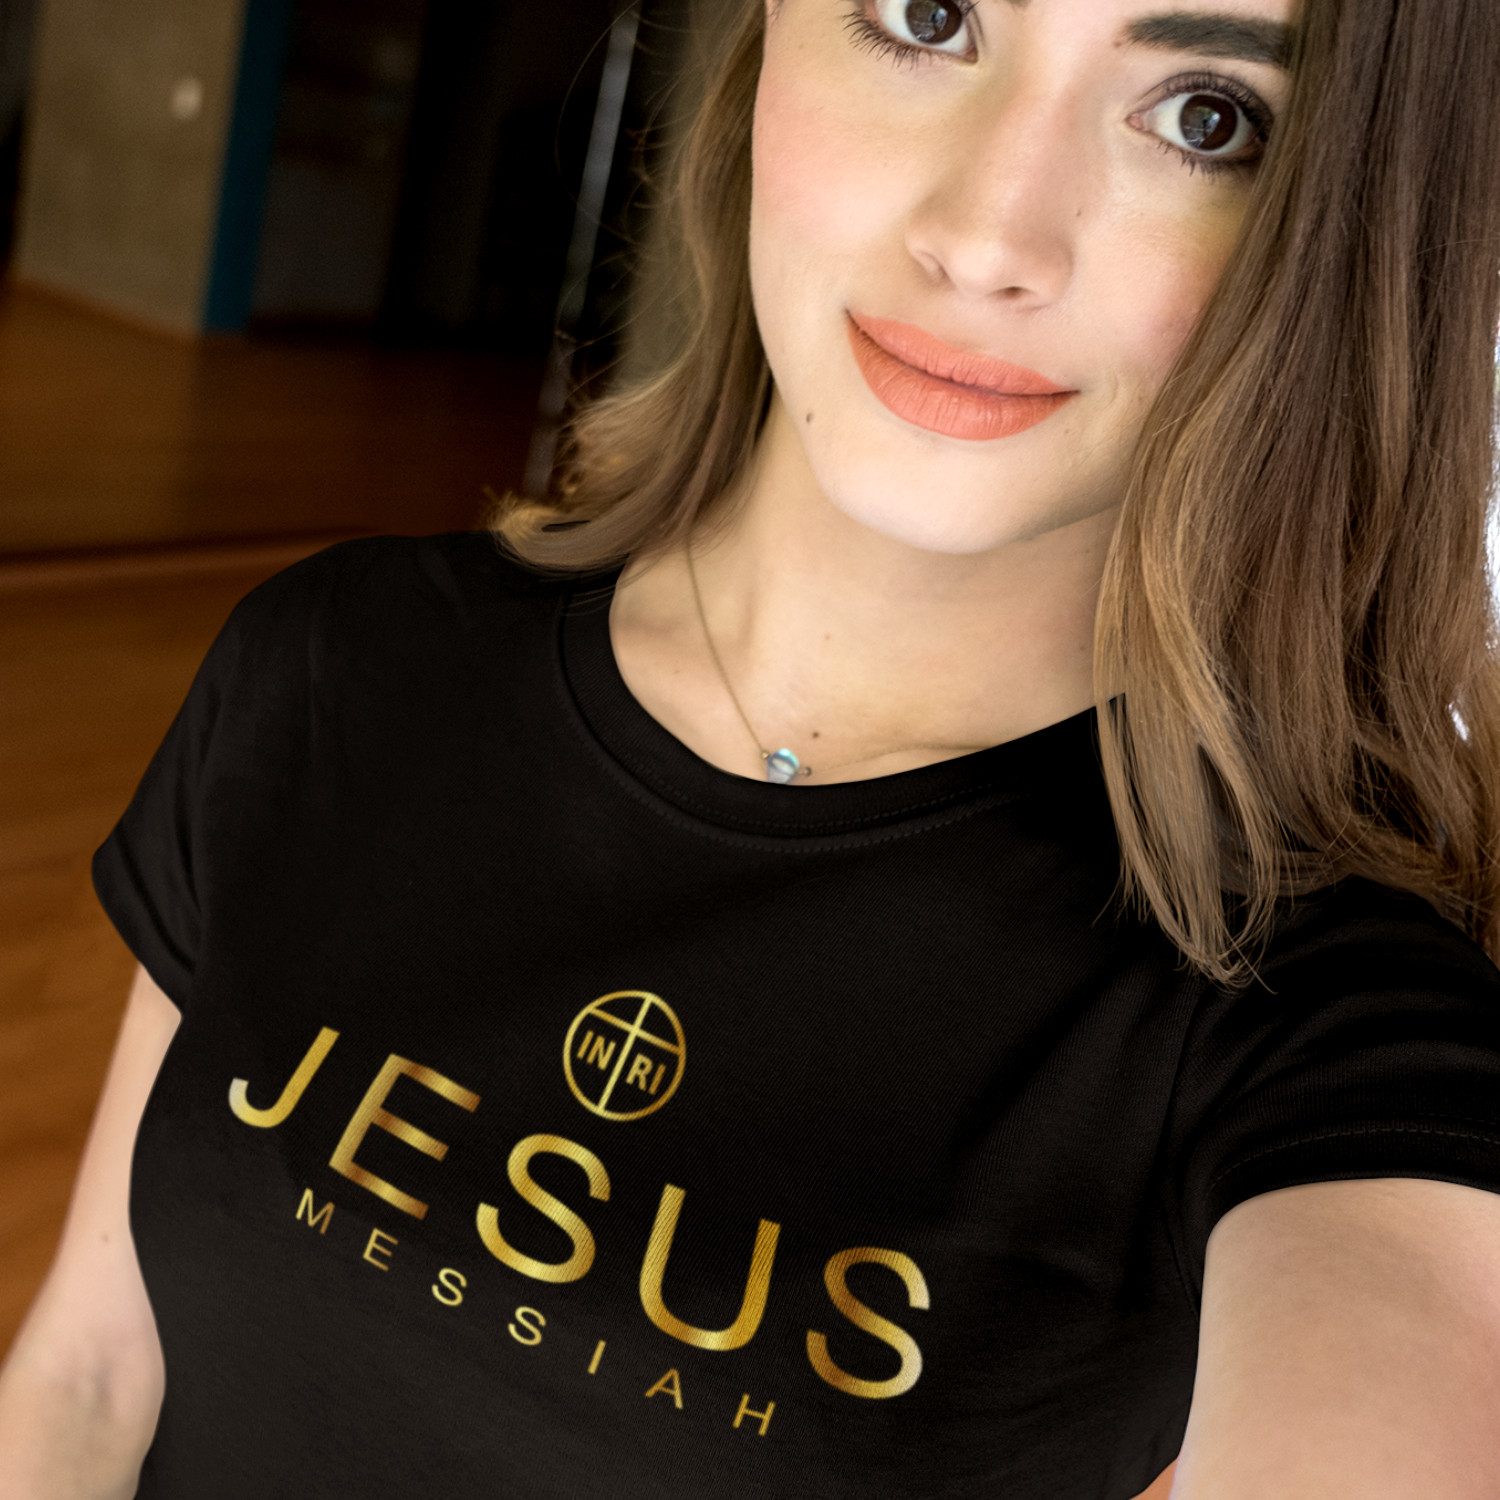 JESUS MESSIAH GOLD - dámské tričko černé